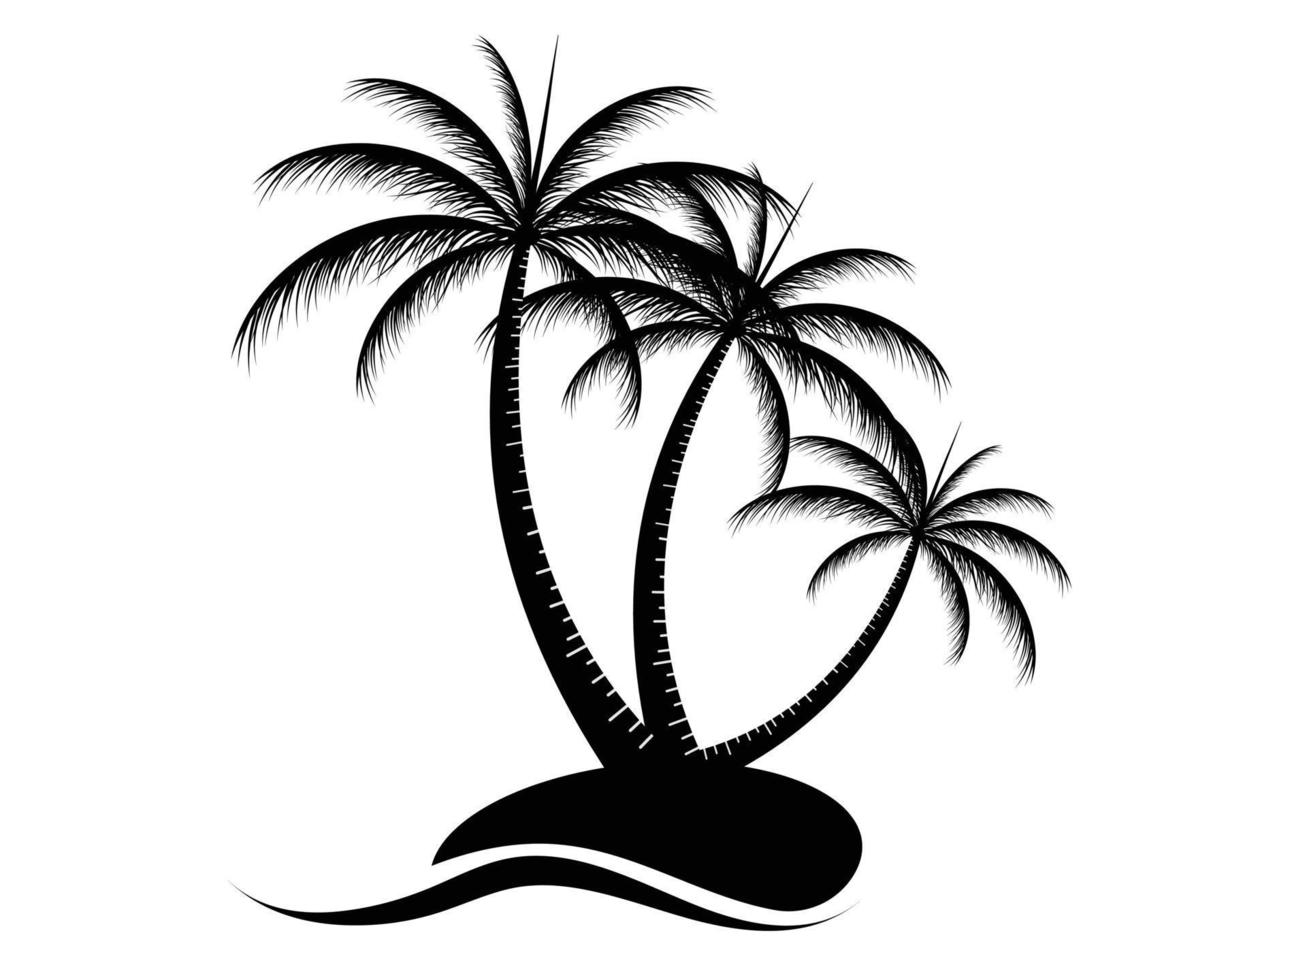 Sammlung von Symbolen für schwarze Kokospalmen. kann verwendet werden, um jedes Thema der Natur oder eines gesunden Lebensstils zu veranschaulichen. vektor